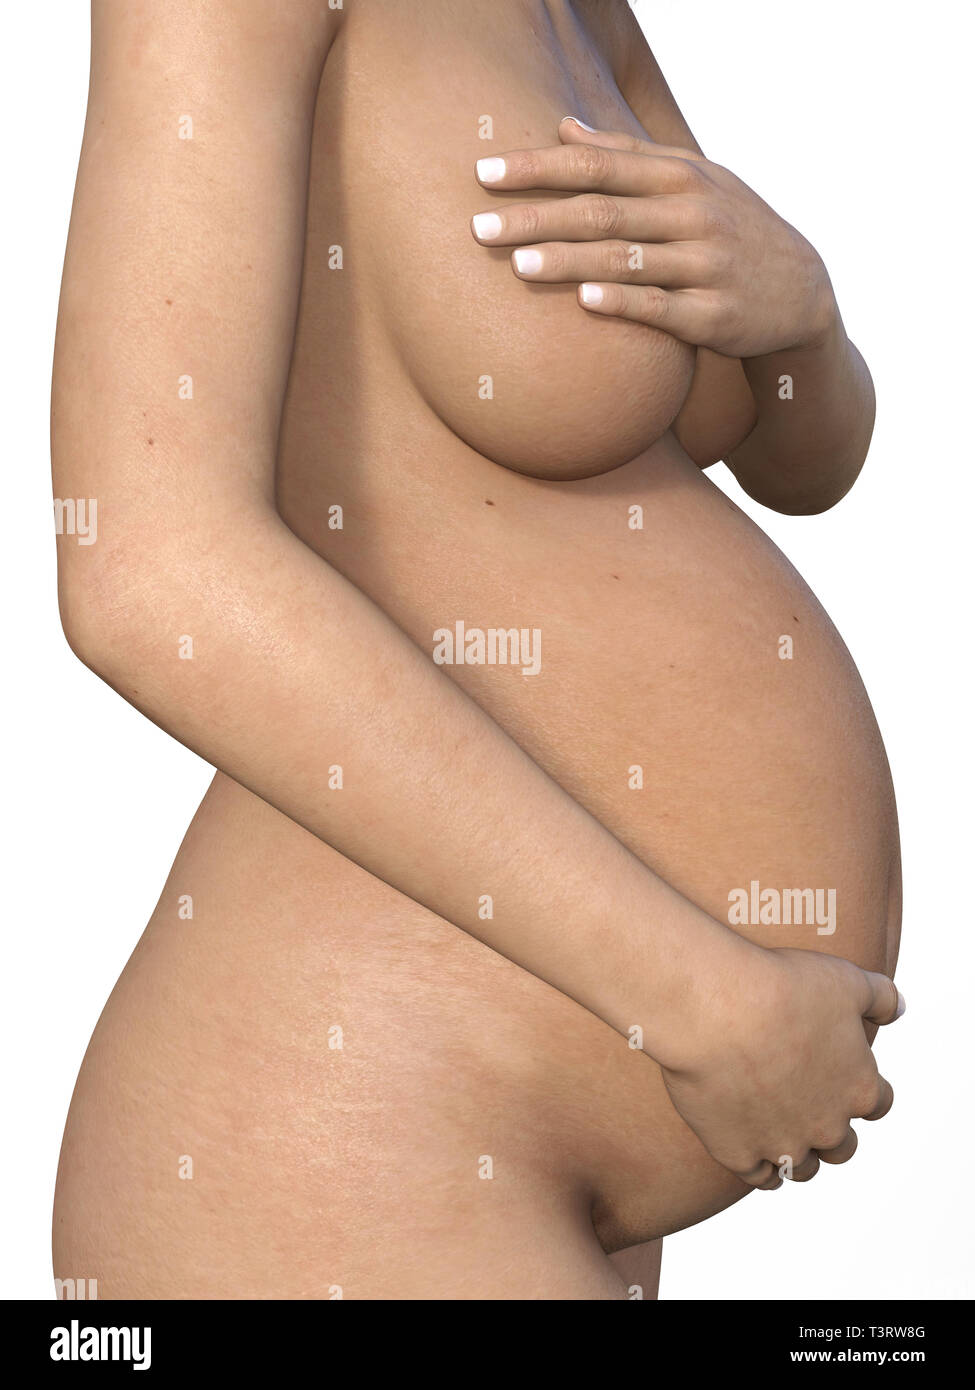 Schwangere Frau ihren grossen Bauch berühren. Close Up. Mutterschaft, Schwangerschaft, Menschen und Erwartung Konzept. Schwangere Frau Baby erwarten Stockfoto